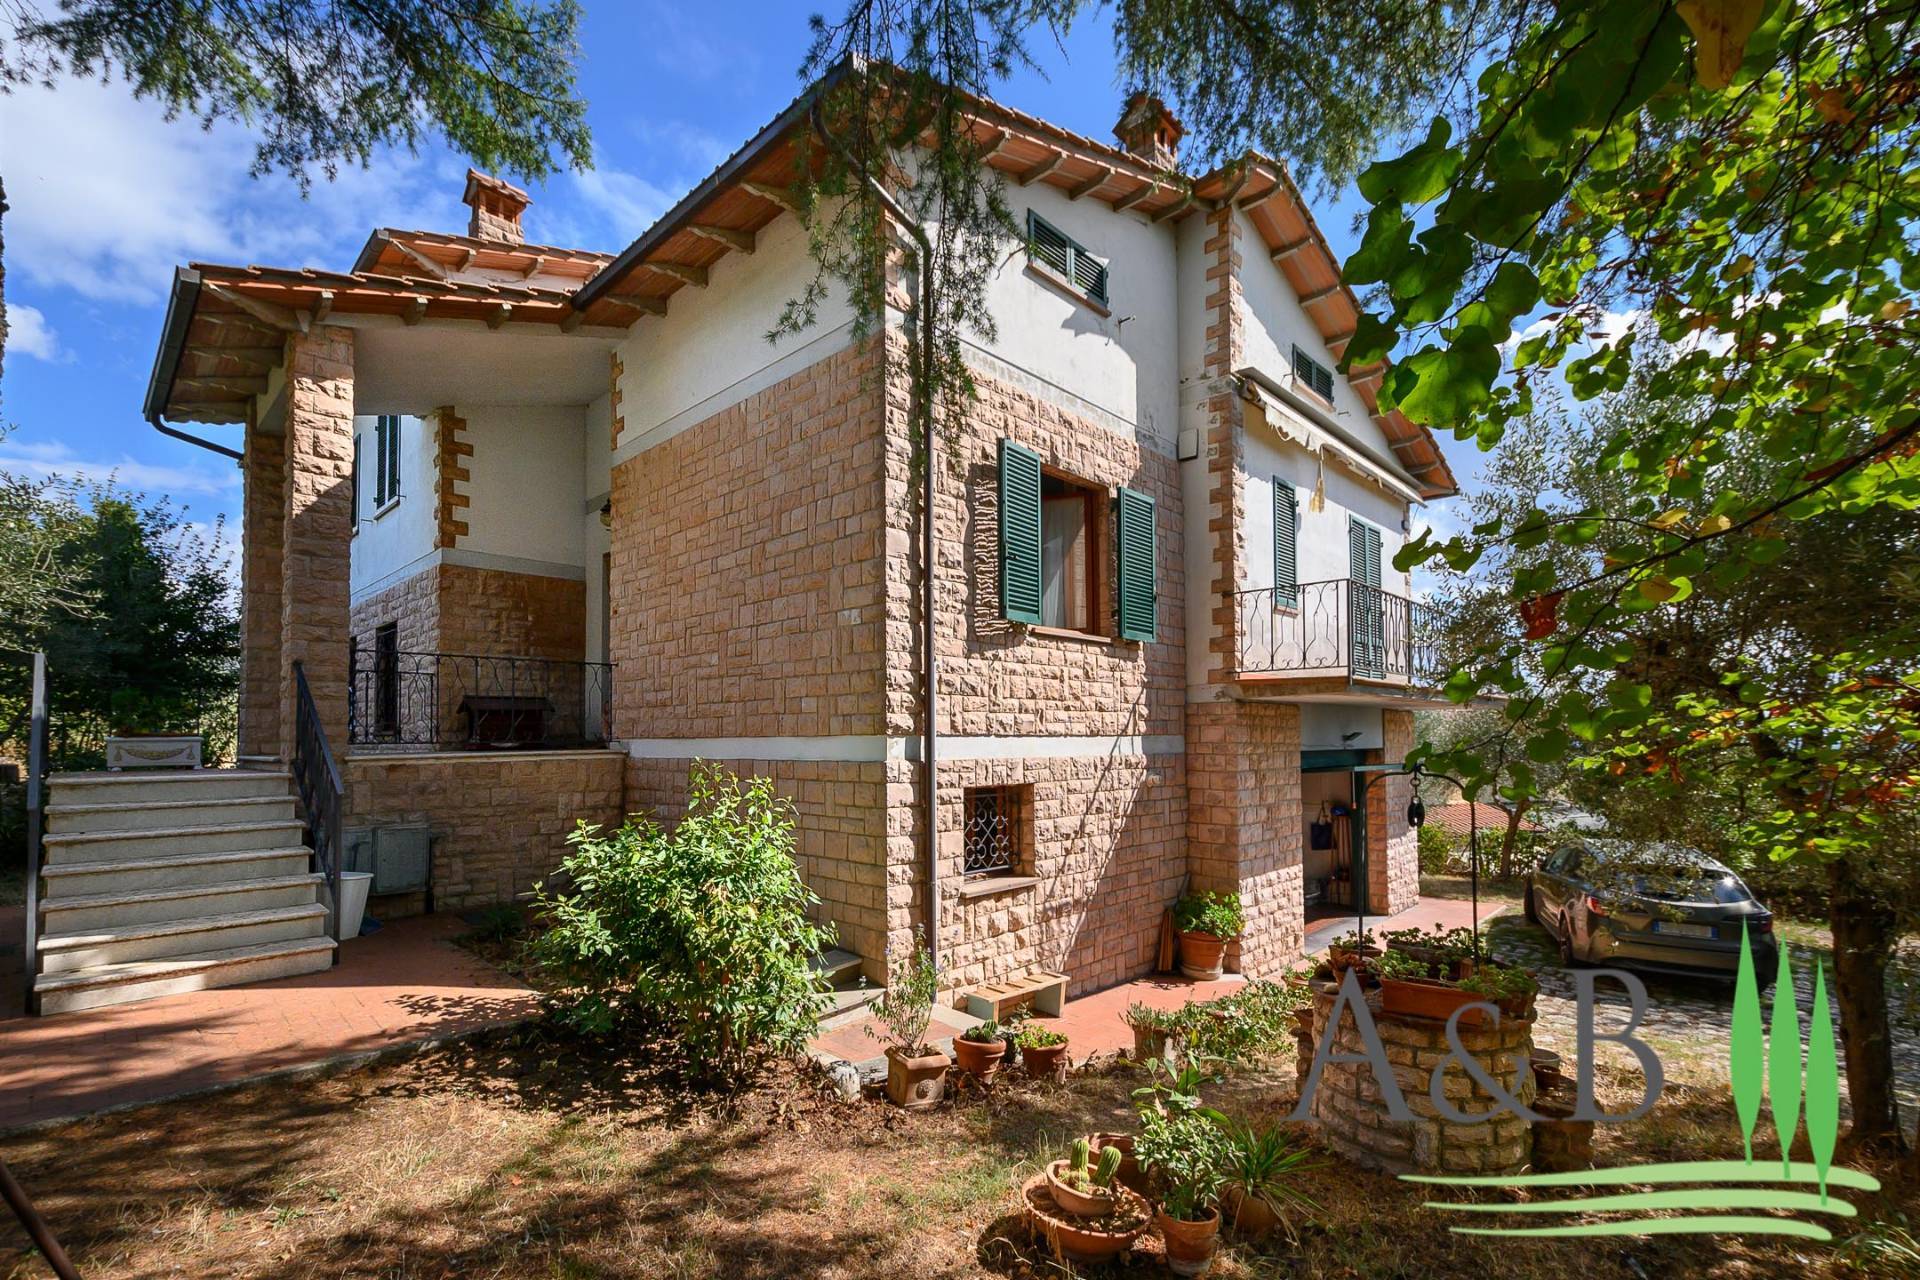 Villa in vendita a Sinalunga